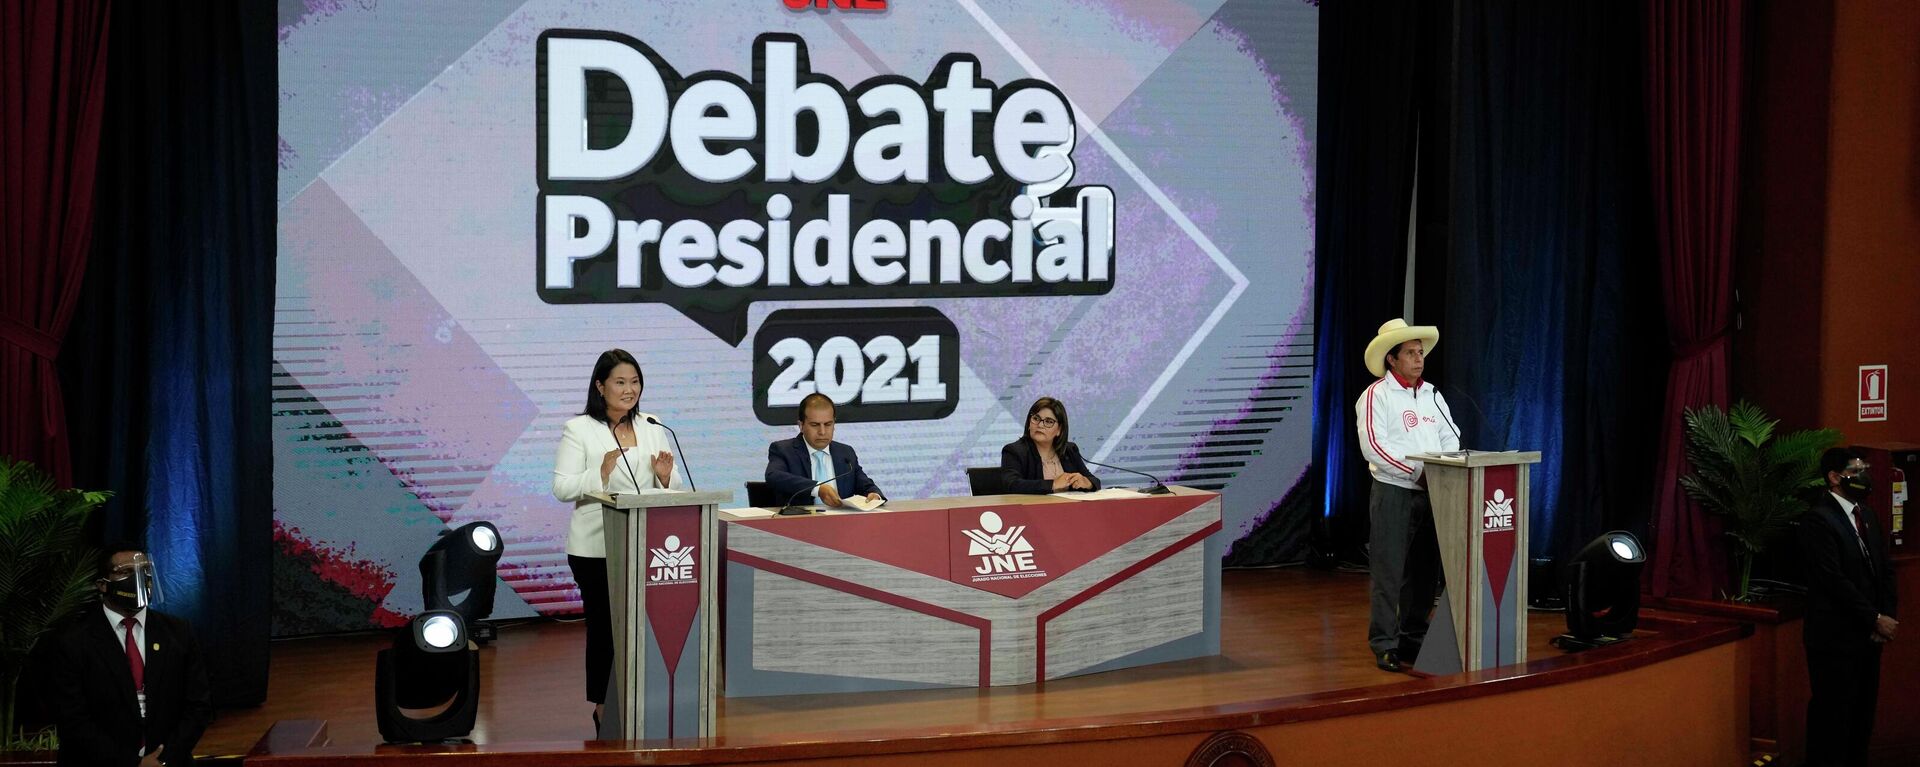 Los dos candidatos presidenciales de Perú, Keiko Fujimori y Pedro Castillo en un debate televisado - Sputnik Mundo, 1920, 31.05.2021